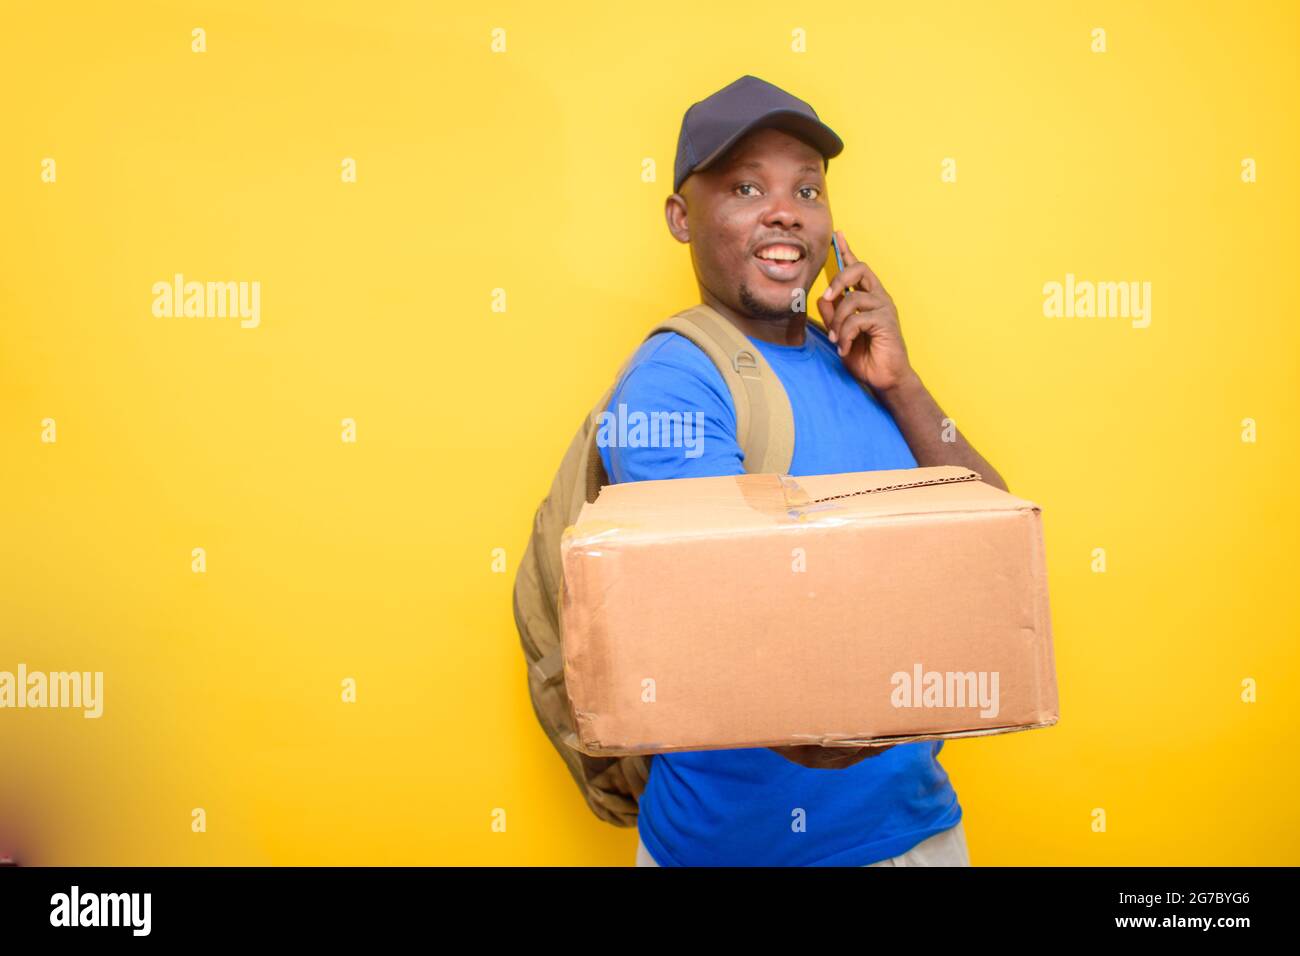 Ein afrikanischer Entsendungsmann mit Rucksack, der einen Anruf abgab, Boxen trug und eine Gesichtskappe trug Stockfoto